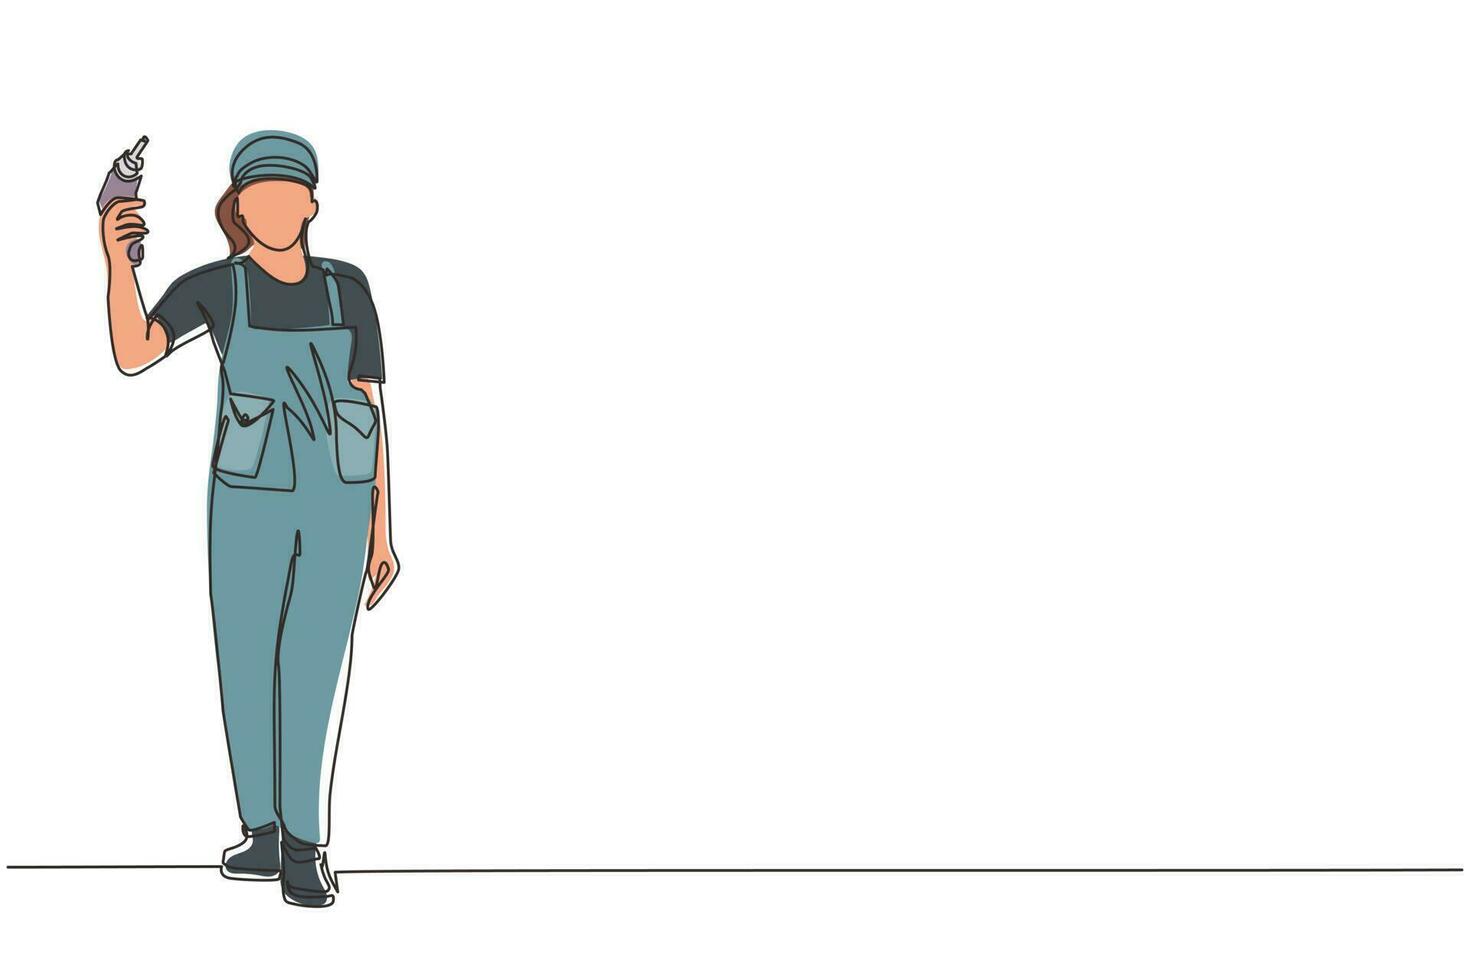 enda en rad ritning kvinna arbetare håller elektrisk borr verktyg för reparation. byggare i uniform. handywoman i overall. reparatör med instrument. modern kontinuerlig linje rita design grafisk vektor